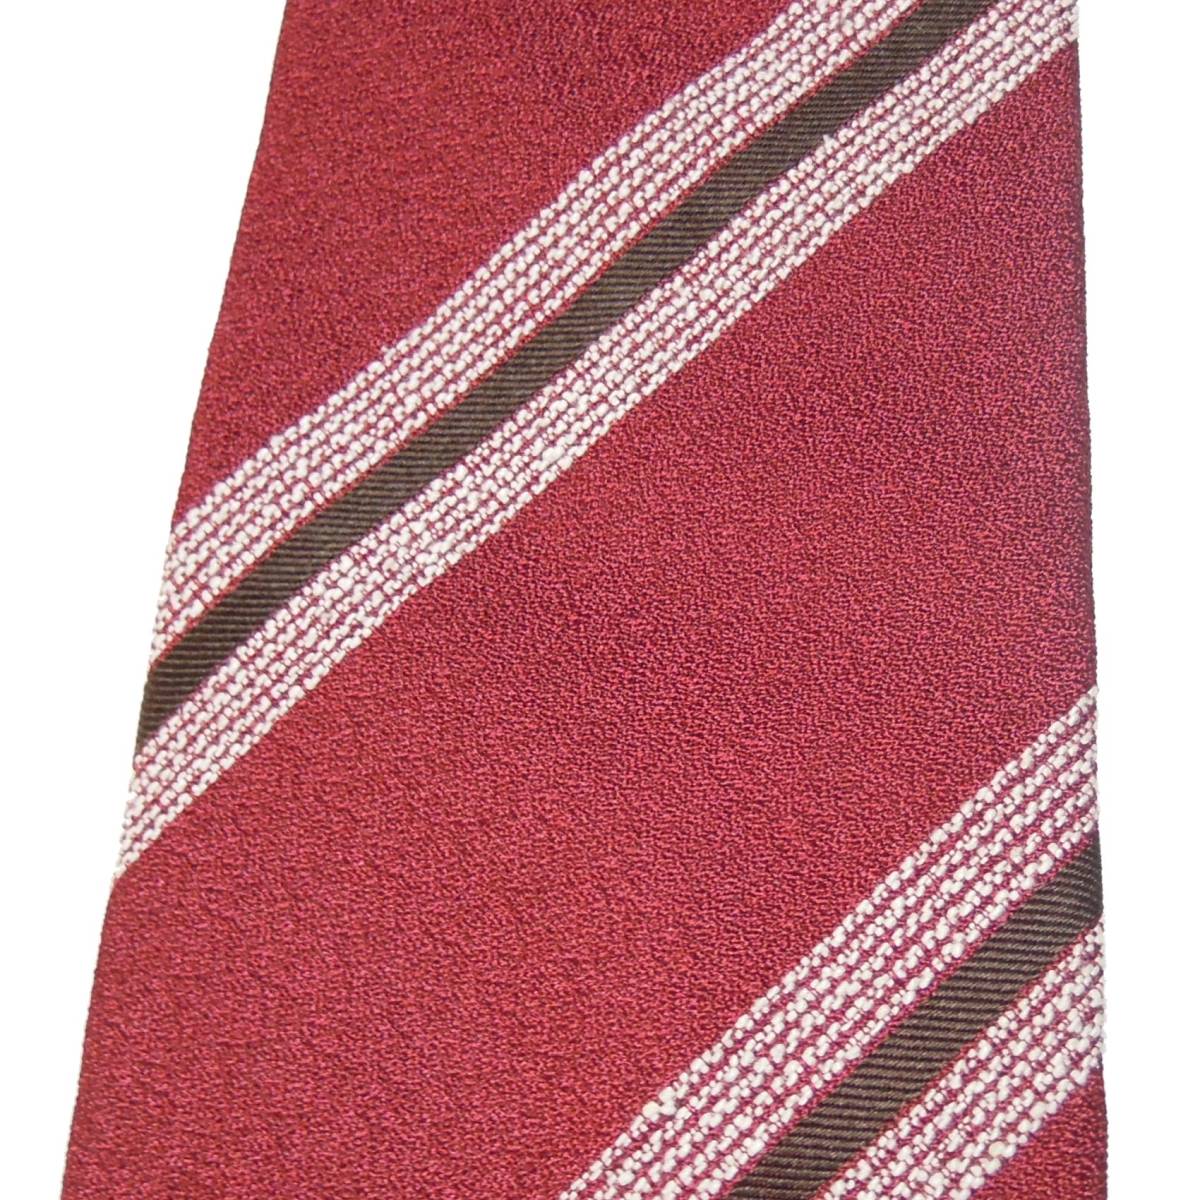  новый товар обычная цена 21,600 иен Stefanobigi / стерео fanobiji шелк полоса галстук -тактный lasbrugo покупка темно-красный × белый × Brown Италия производства 